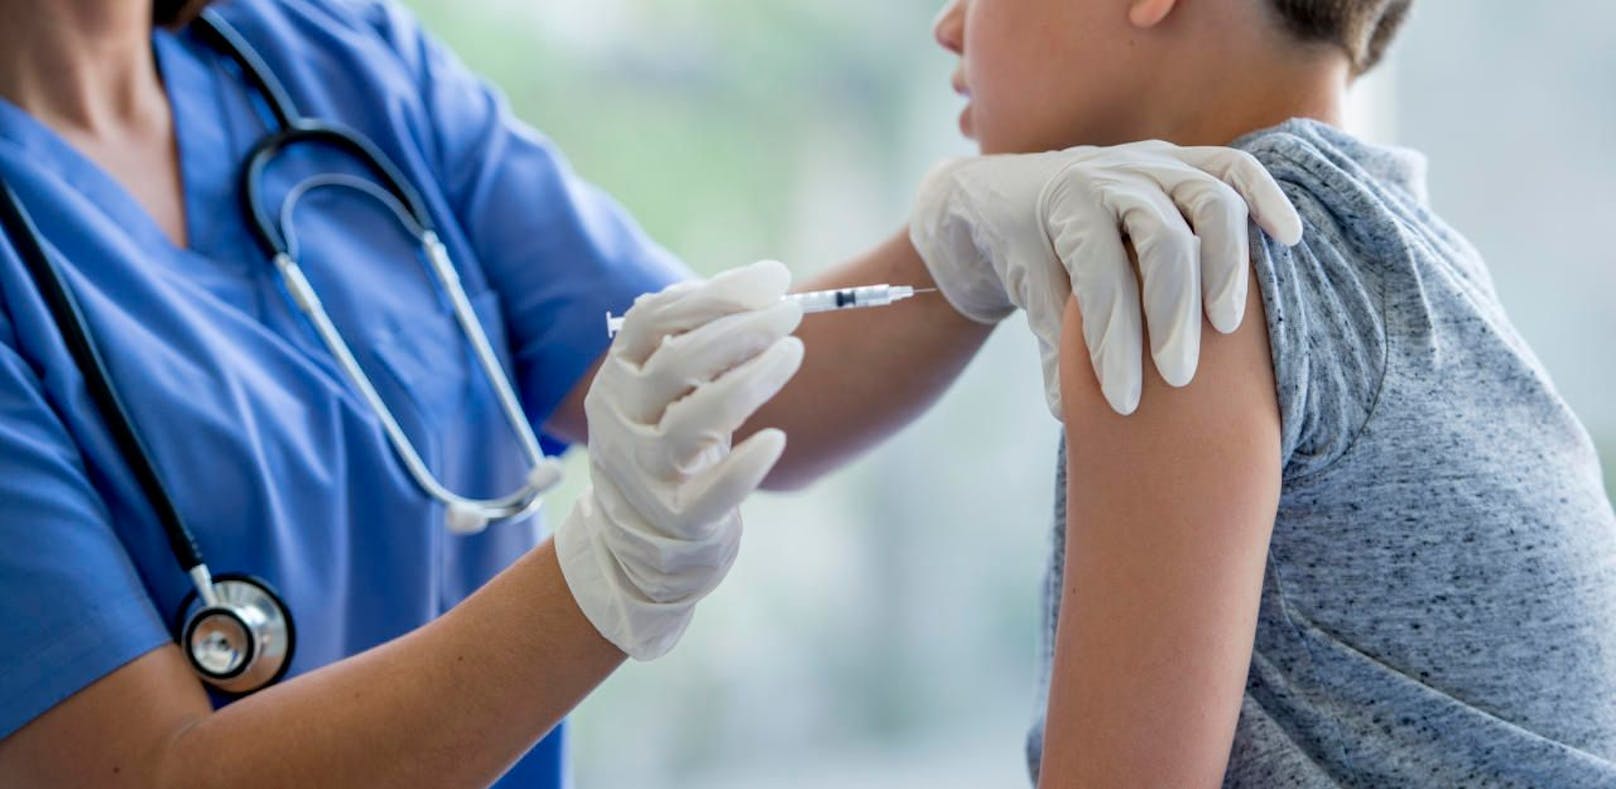 Eine strenge Impfpflicht in Italien sorgt dafür, dass Eltern in Extremfällen das Sorgerecht verlieren können. (Symbolbild)